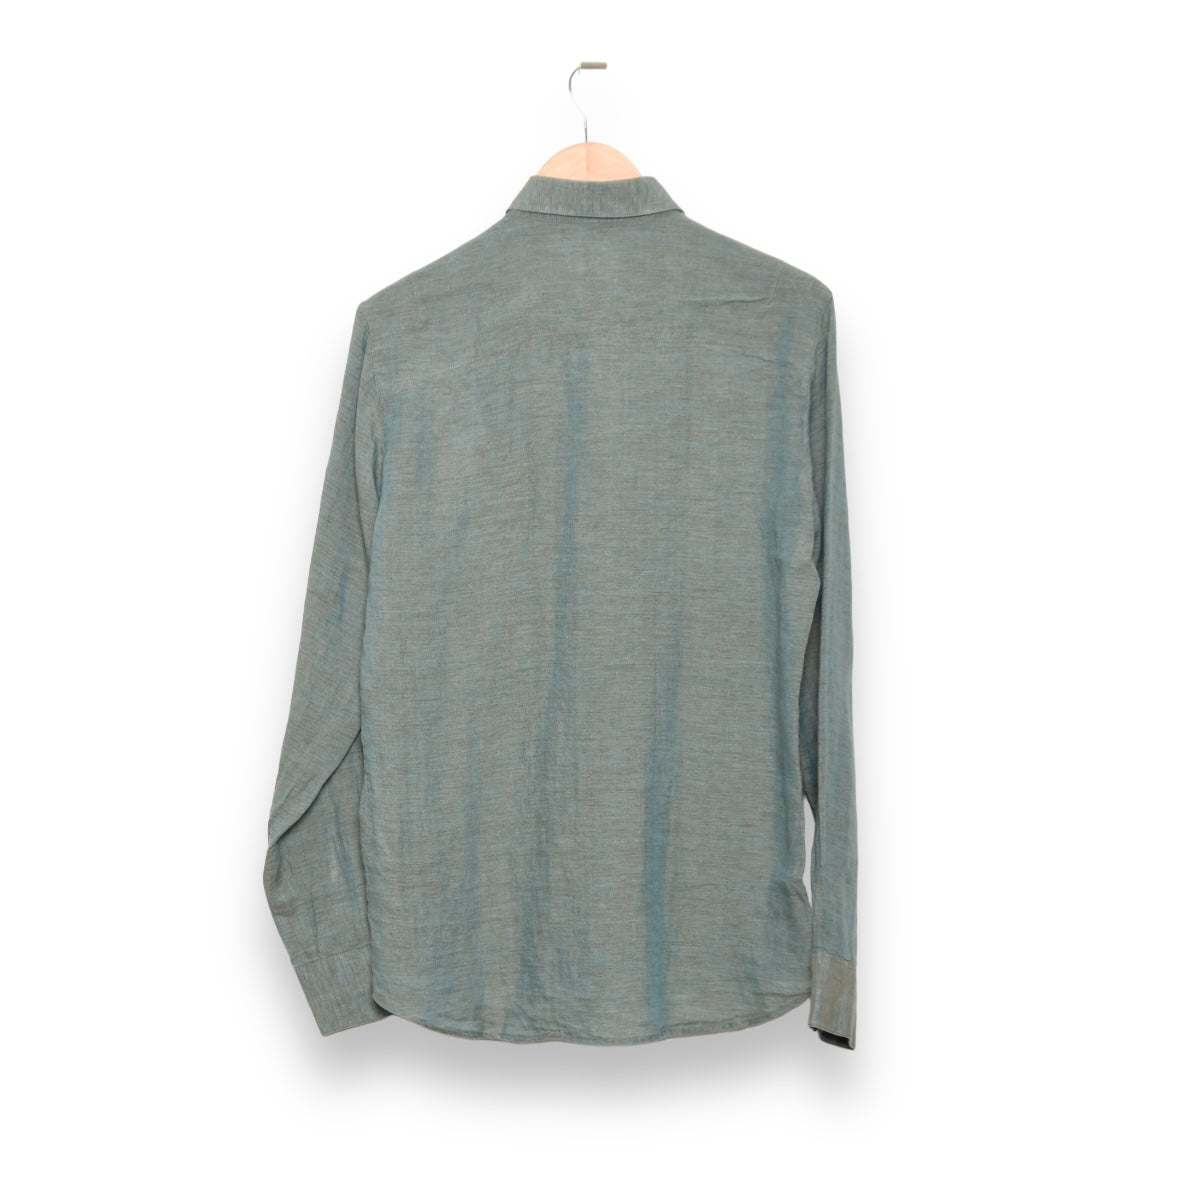 Delikatessen Feel Good Shirt D715/P36 green iridescent linen